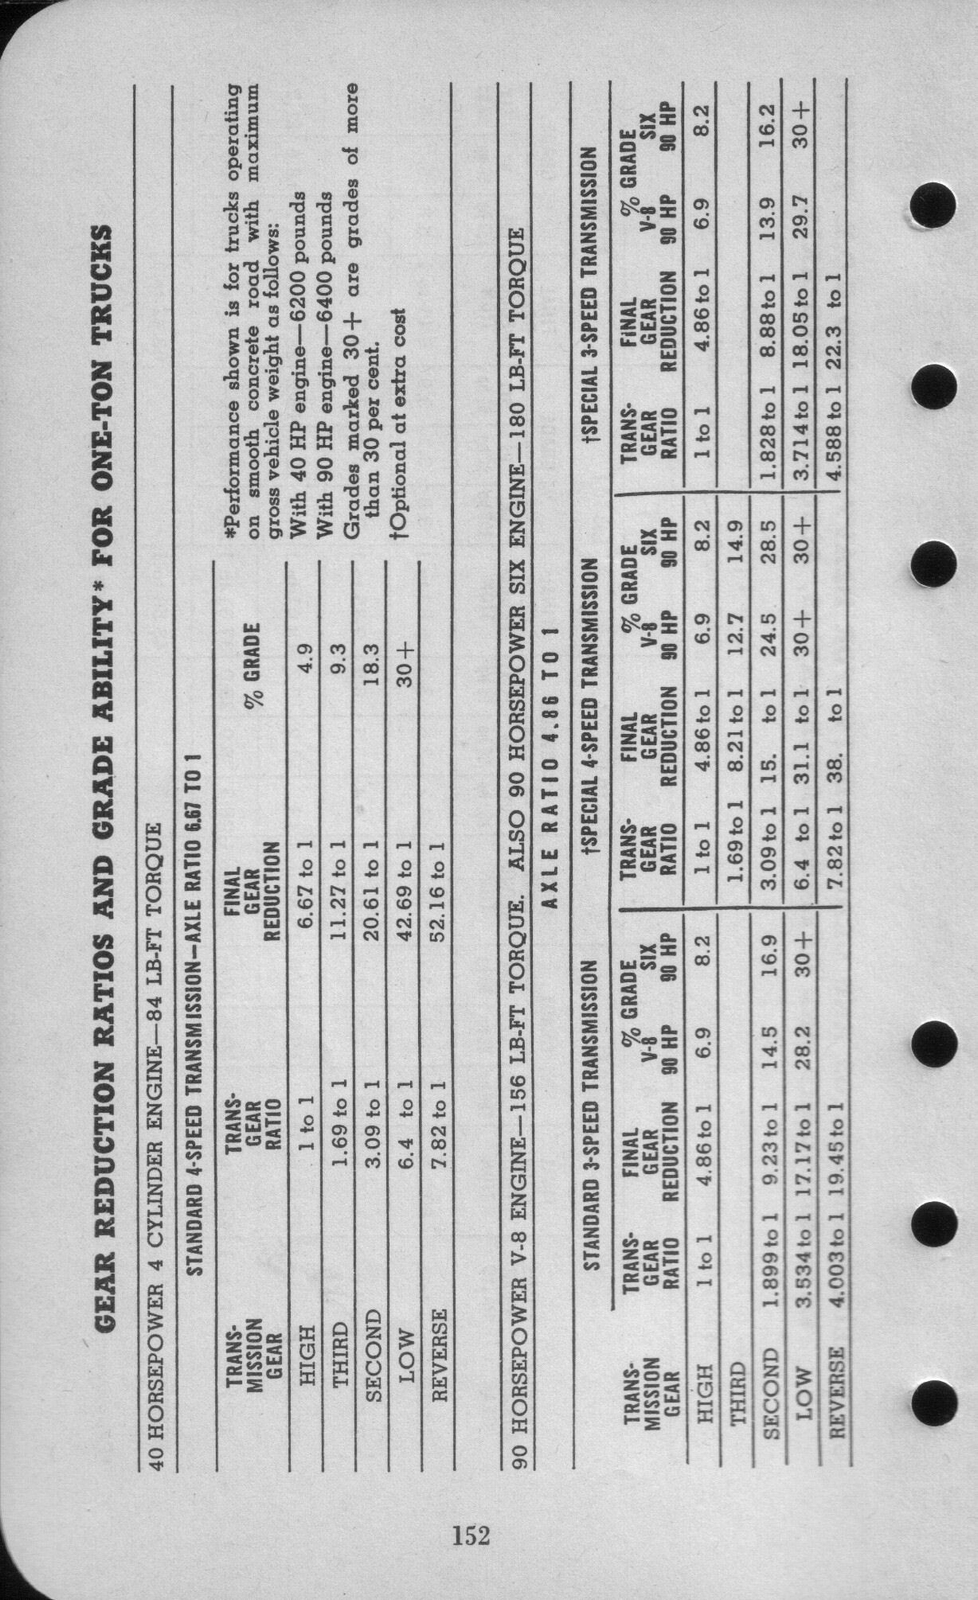 n_1942 Ford Salesmans Reference Manual-152.jpg